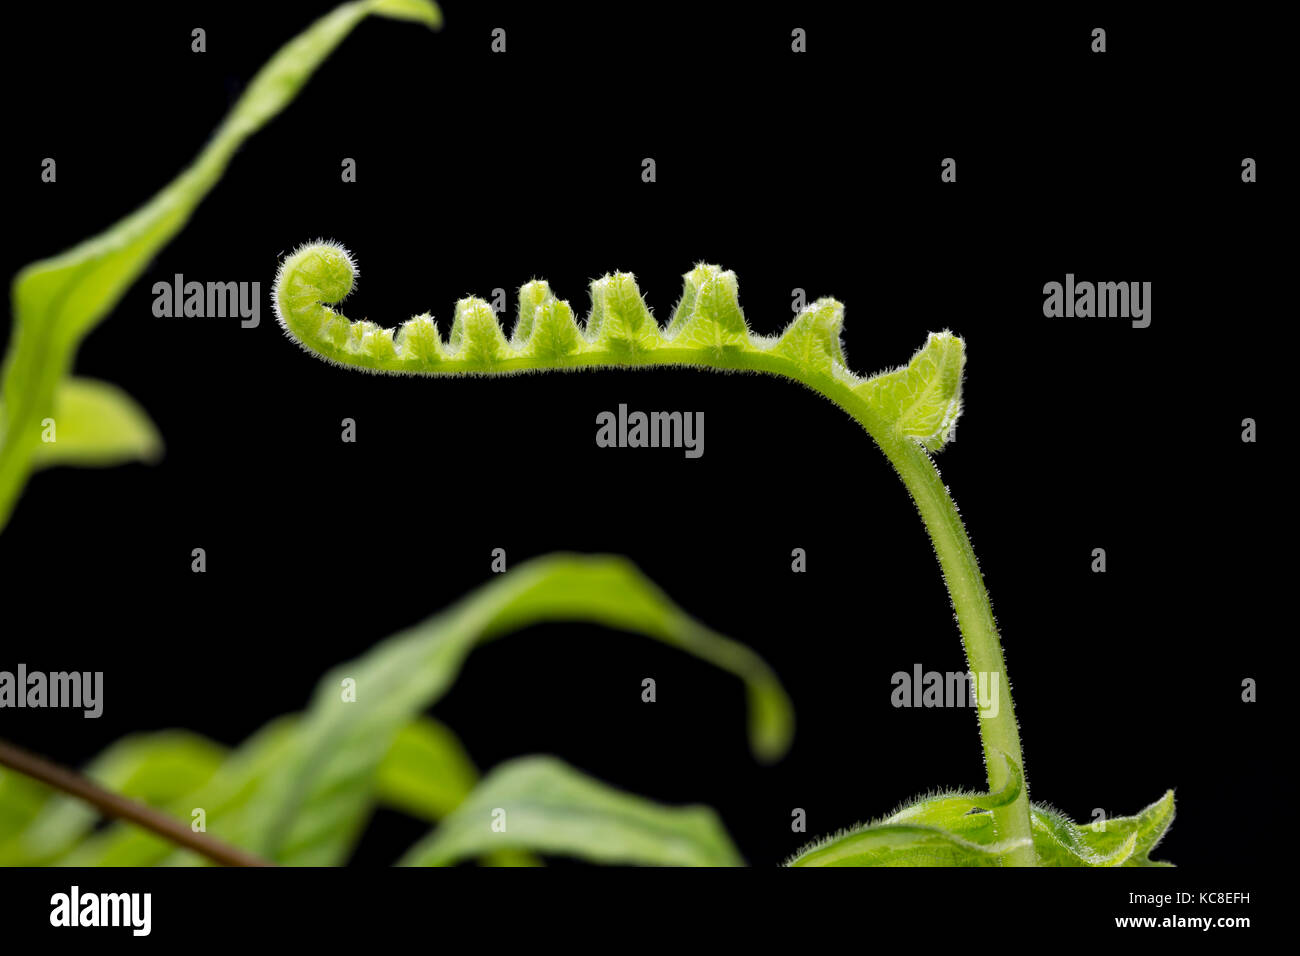 Entfaltung Wedel von Grub Farn oder Caterpillar Farn, Polypodiodes formosana, auch bekannt als Polypodium formosanum, (im Anbau, beheimatet in Asien) Stockfoto